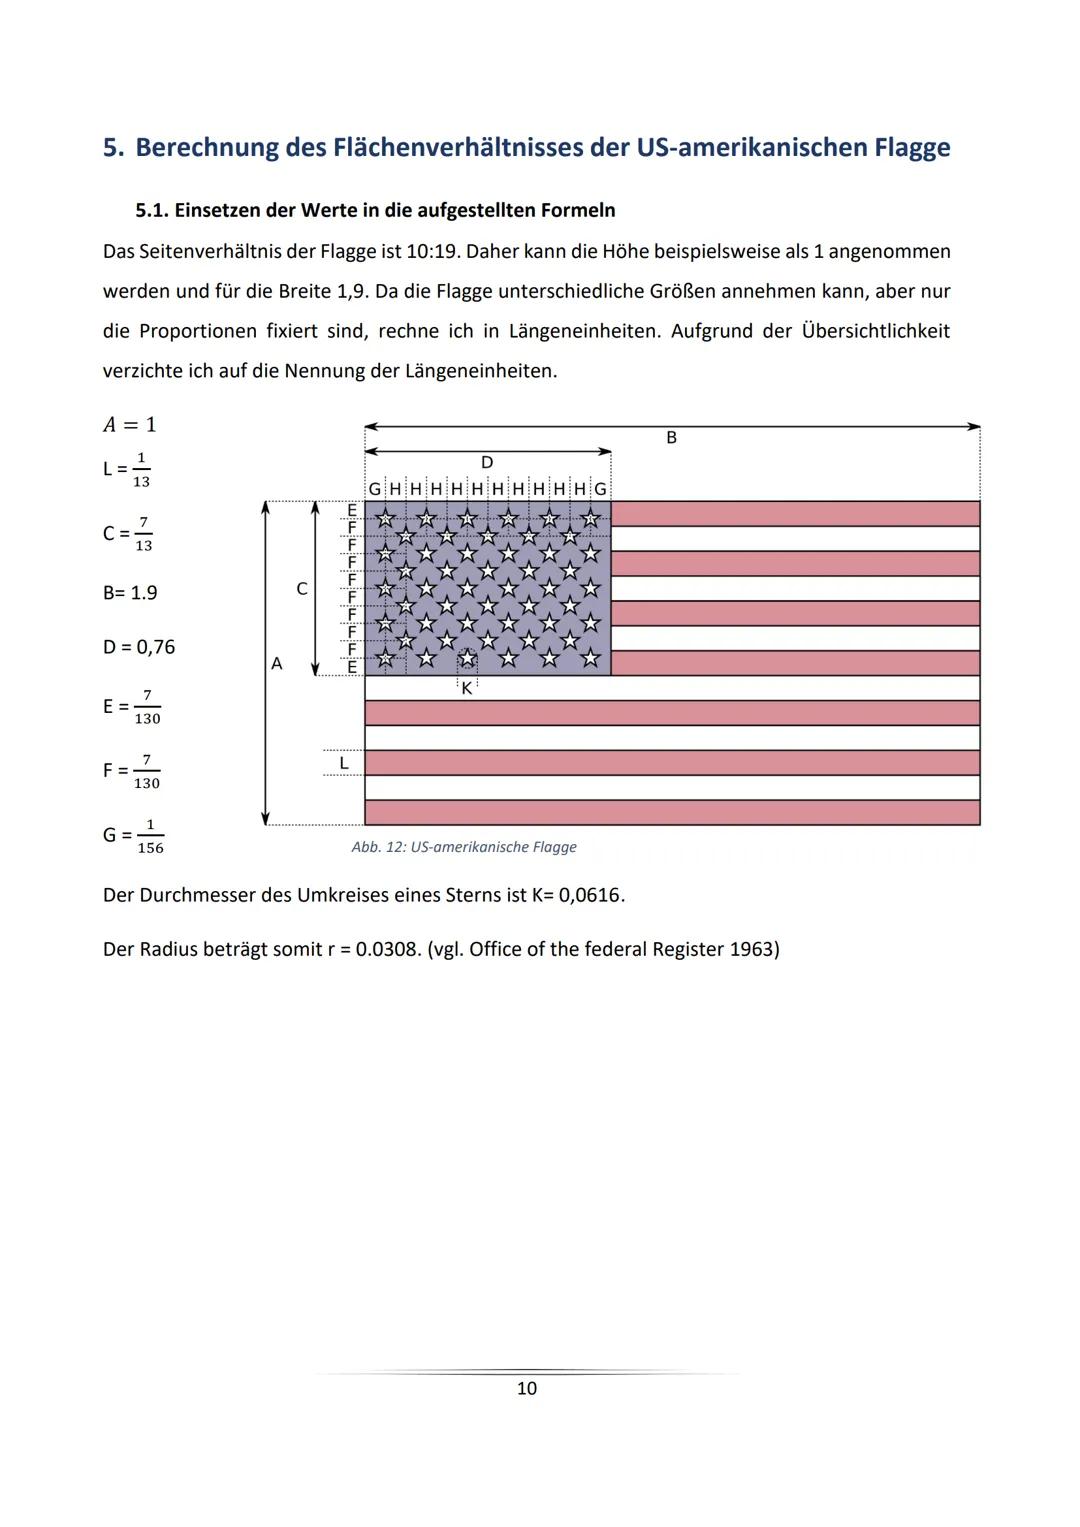 The Star-Spangled Banner
Die Berechnung des Farbverhältnisses der US-amerikanischen Flagge
unter besonderer Berücksichtigung des Pentagramms